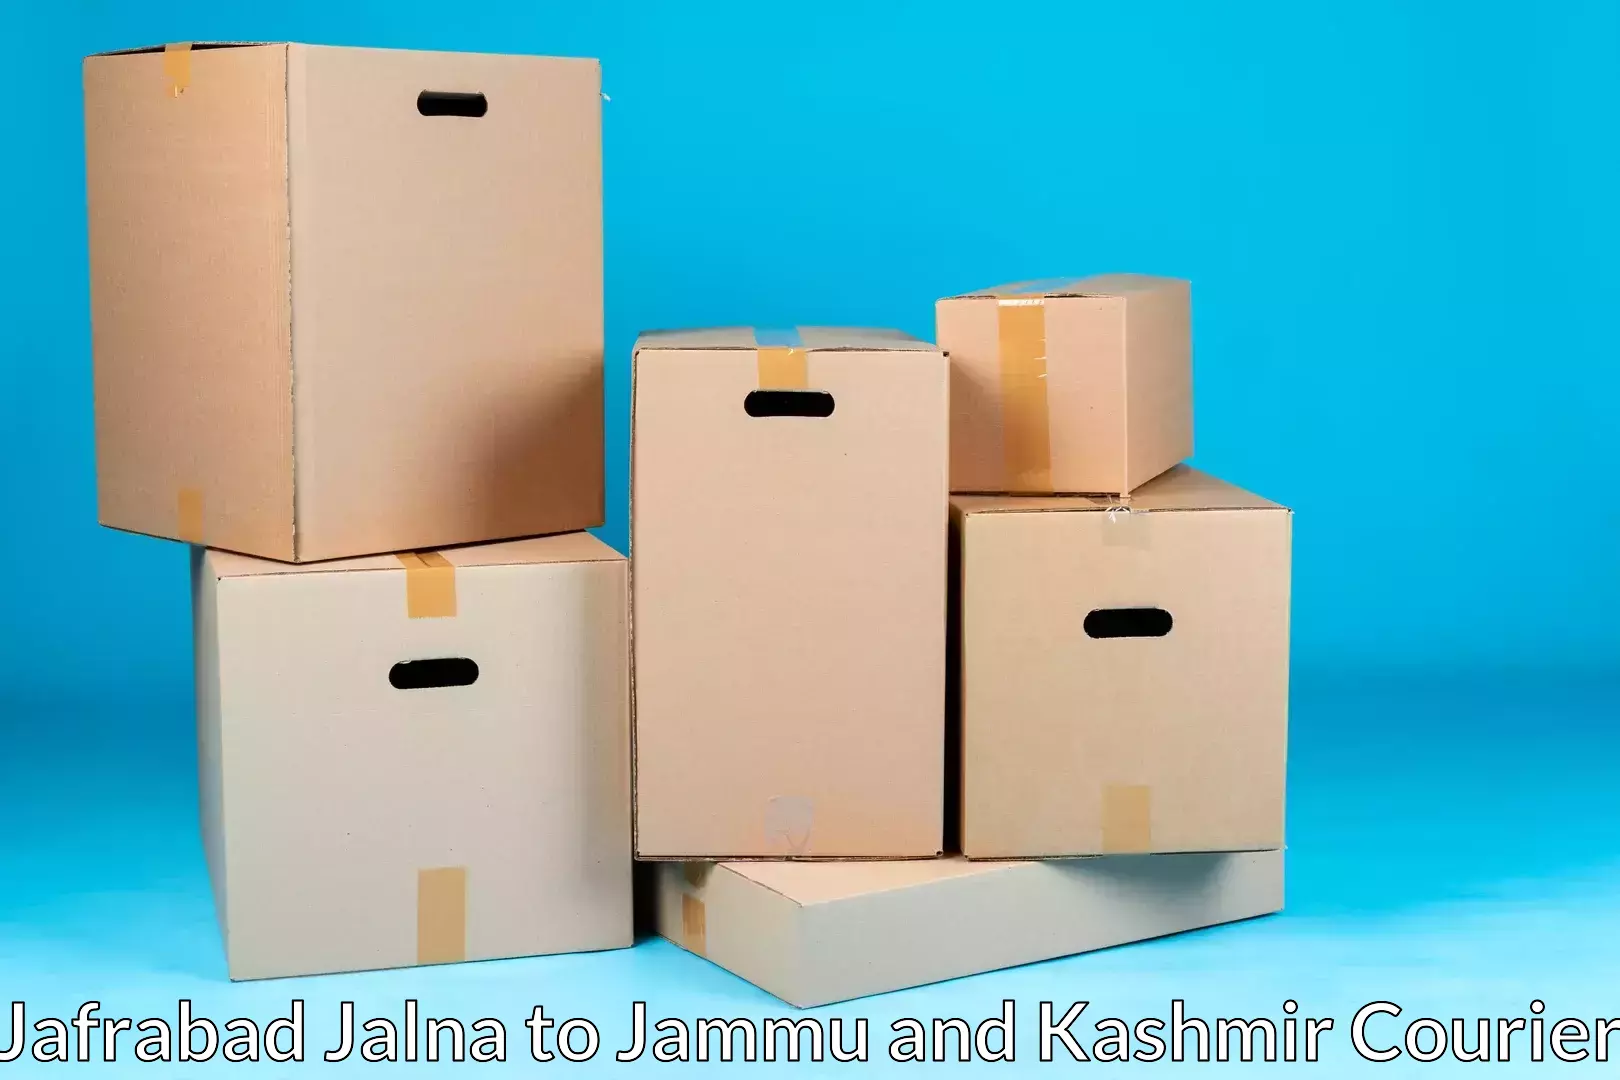 Professional moving assistance Jafrabad Jalna to Anantnag